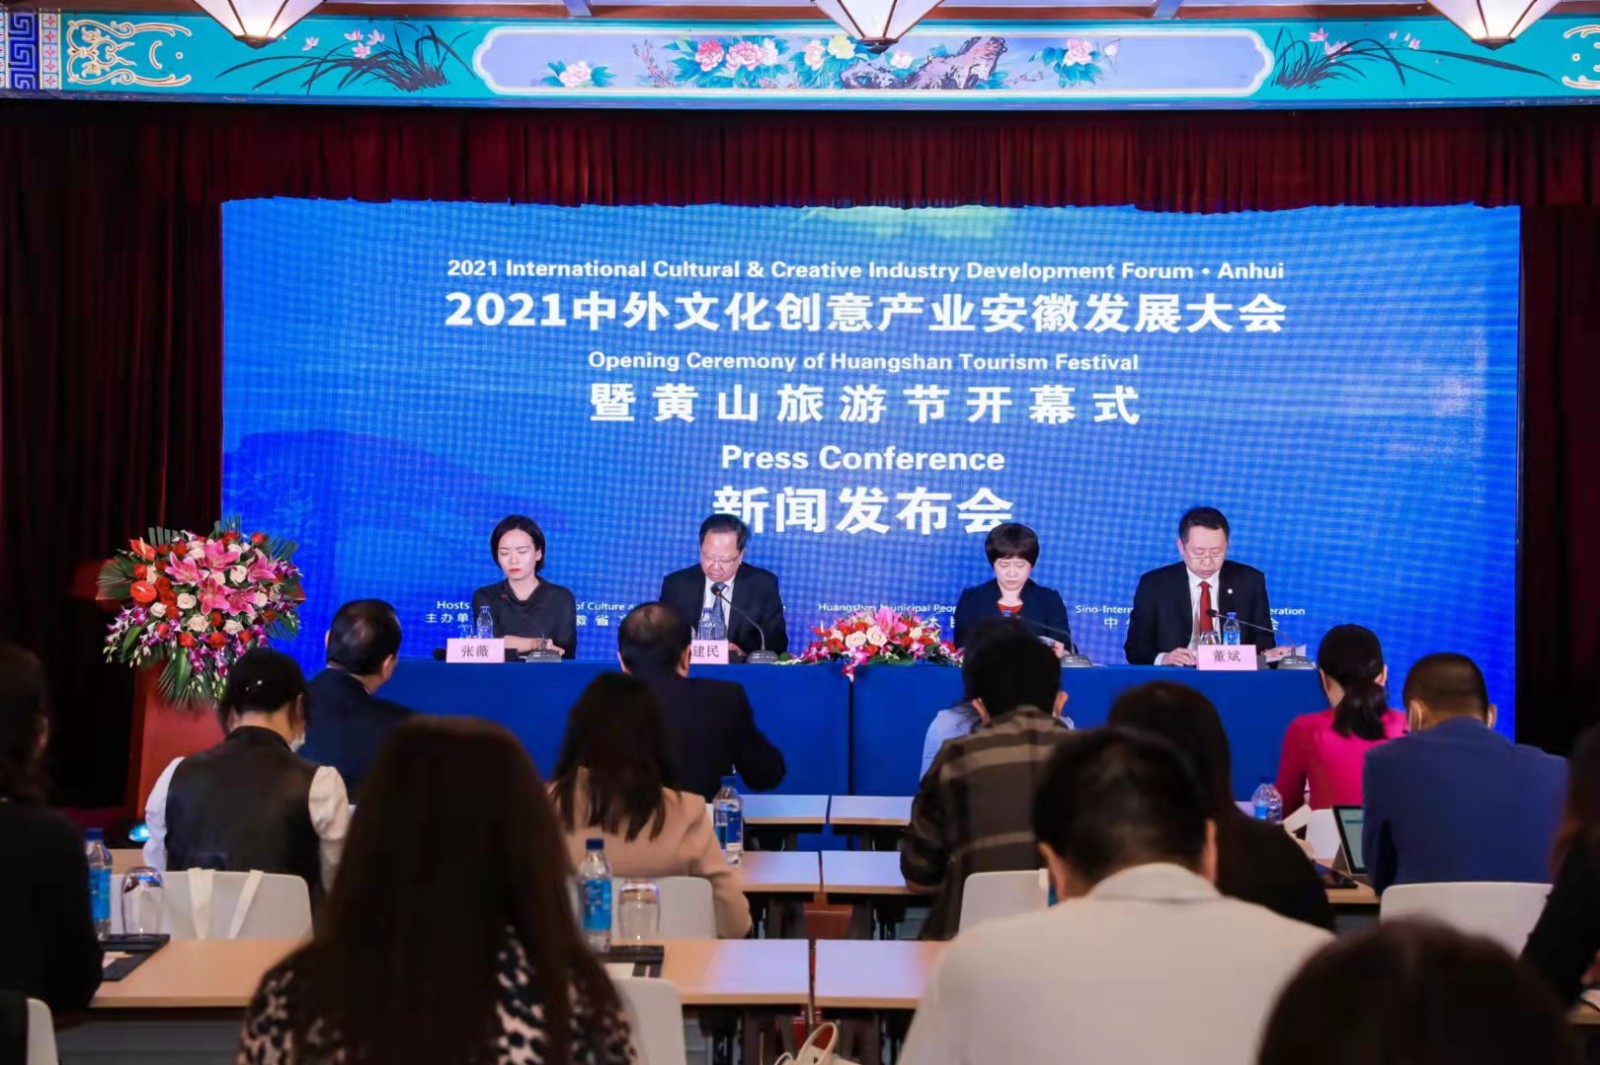 2021中外文化创意产业安徽发展大会暨黄山旅游节将于10月14日-17日举行